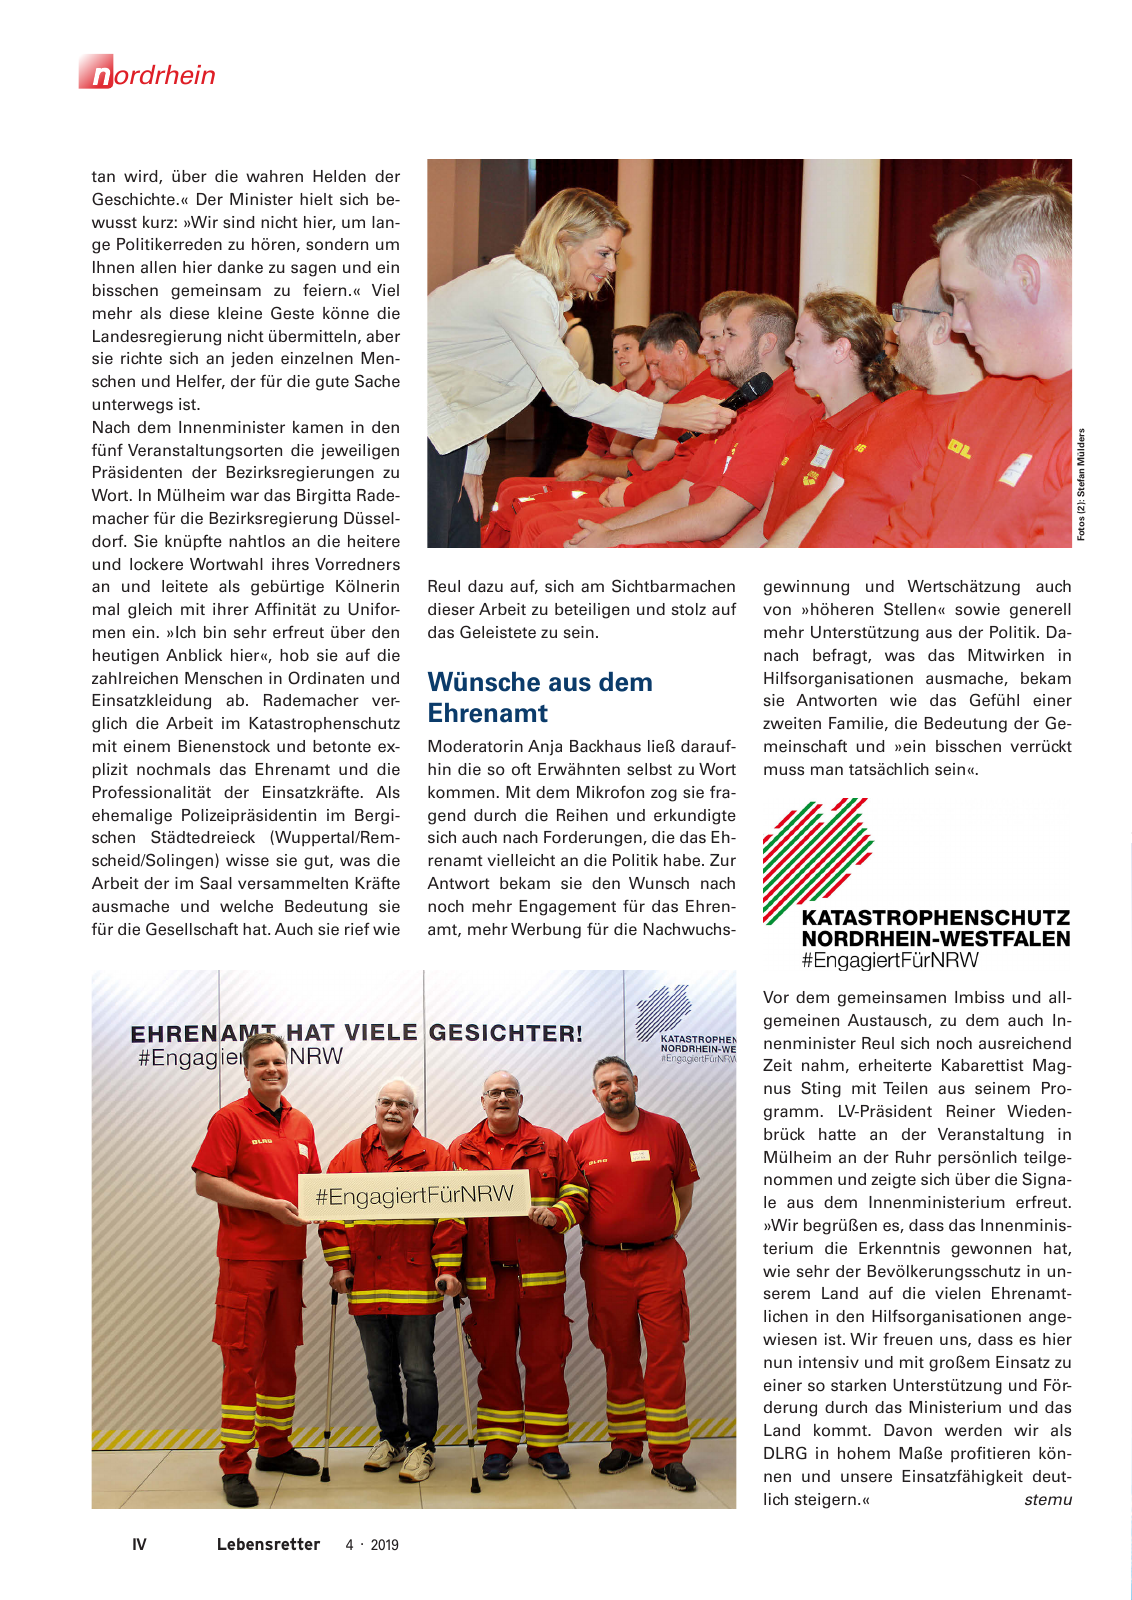 Vorschau Lebensretter 4/2019 -  Nordrhein Regionalausgabe Seite 6